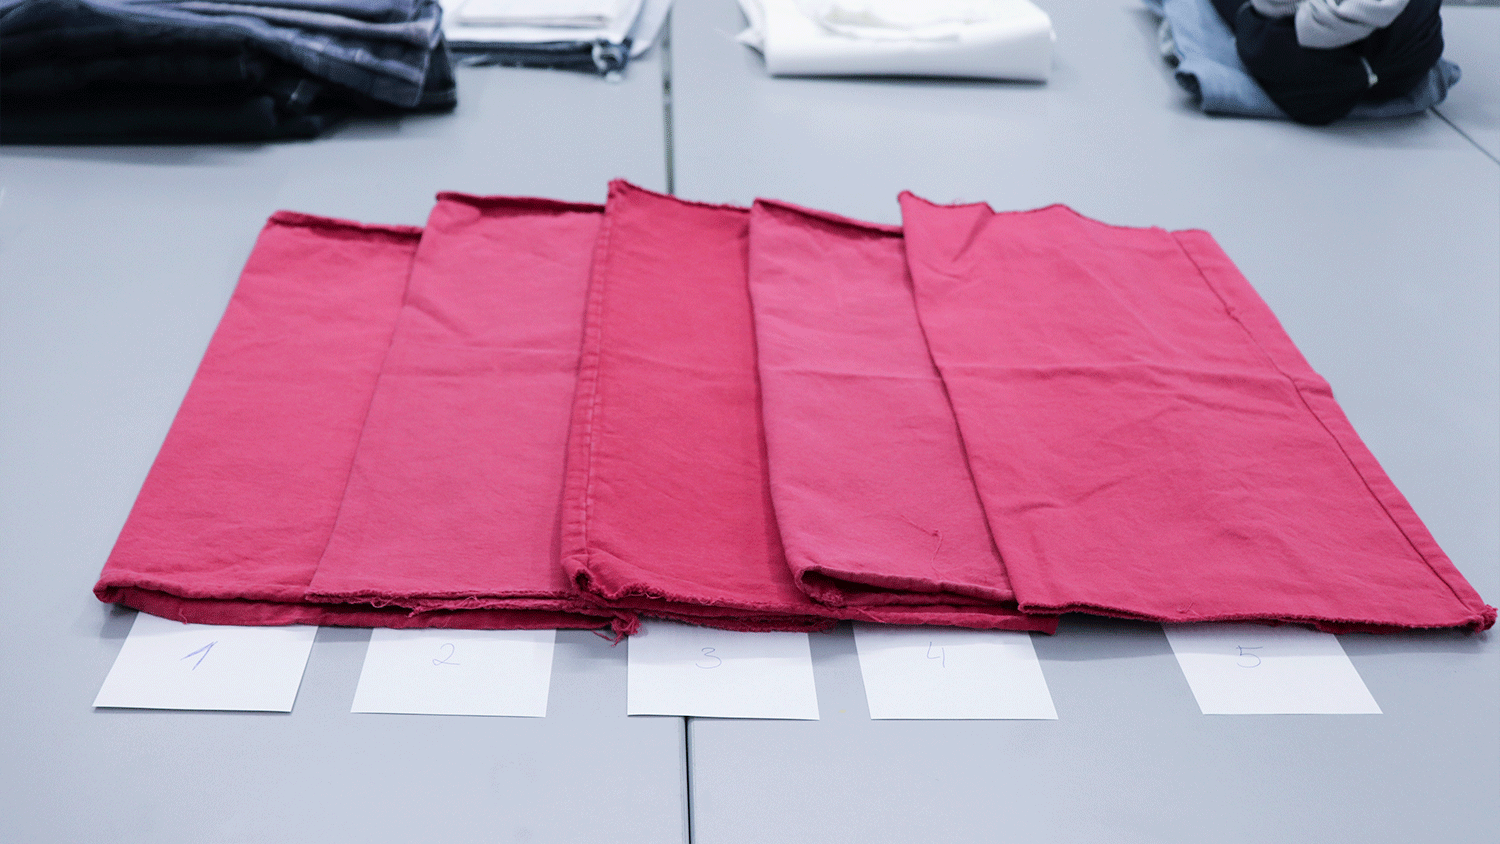 Rote Stoffe für praktische Versuche im Labor